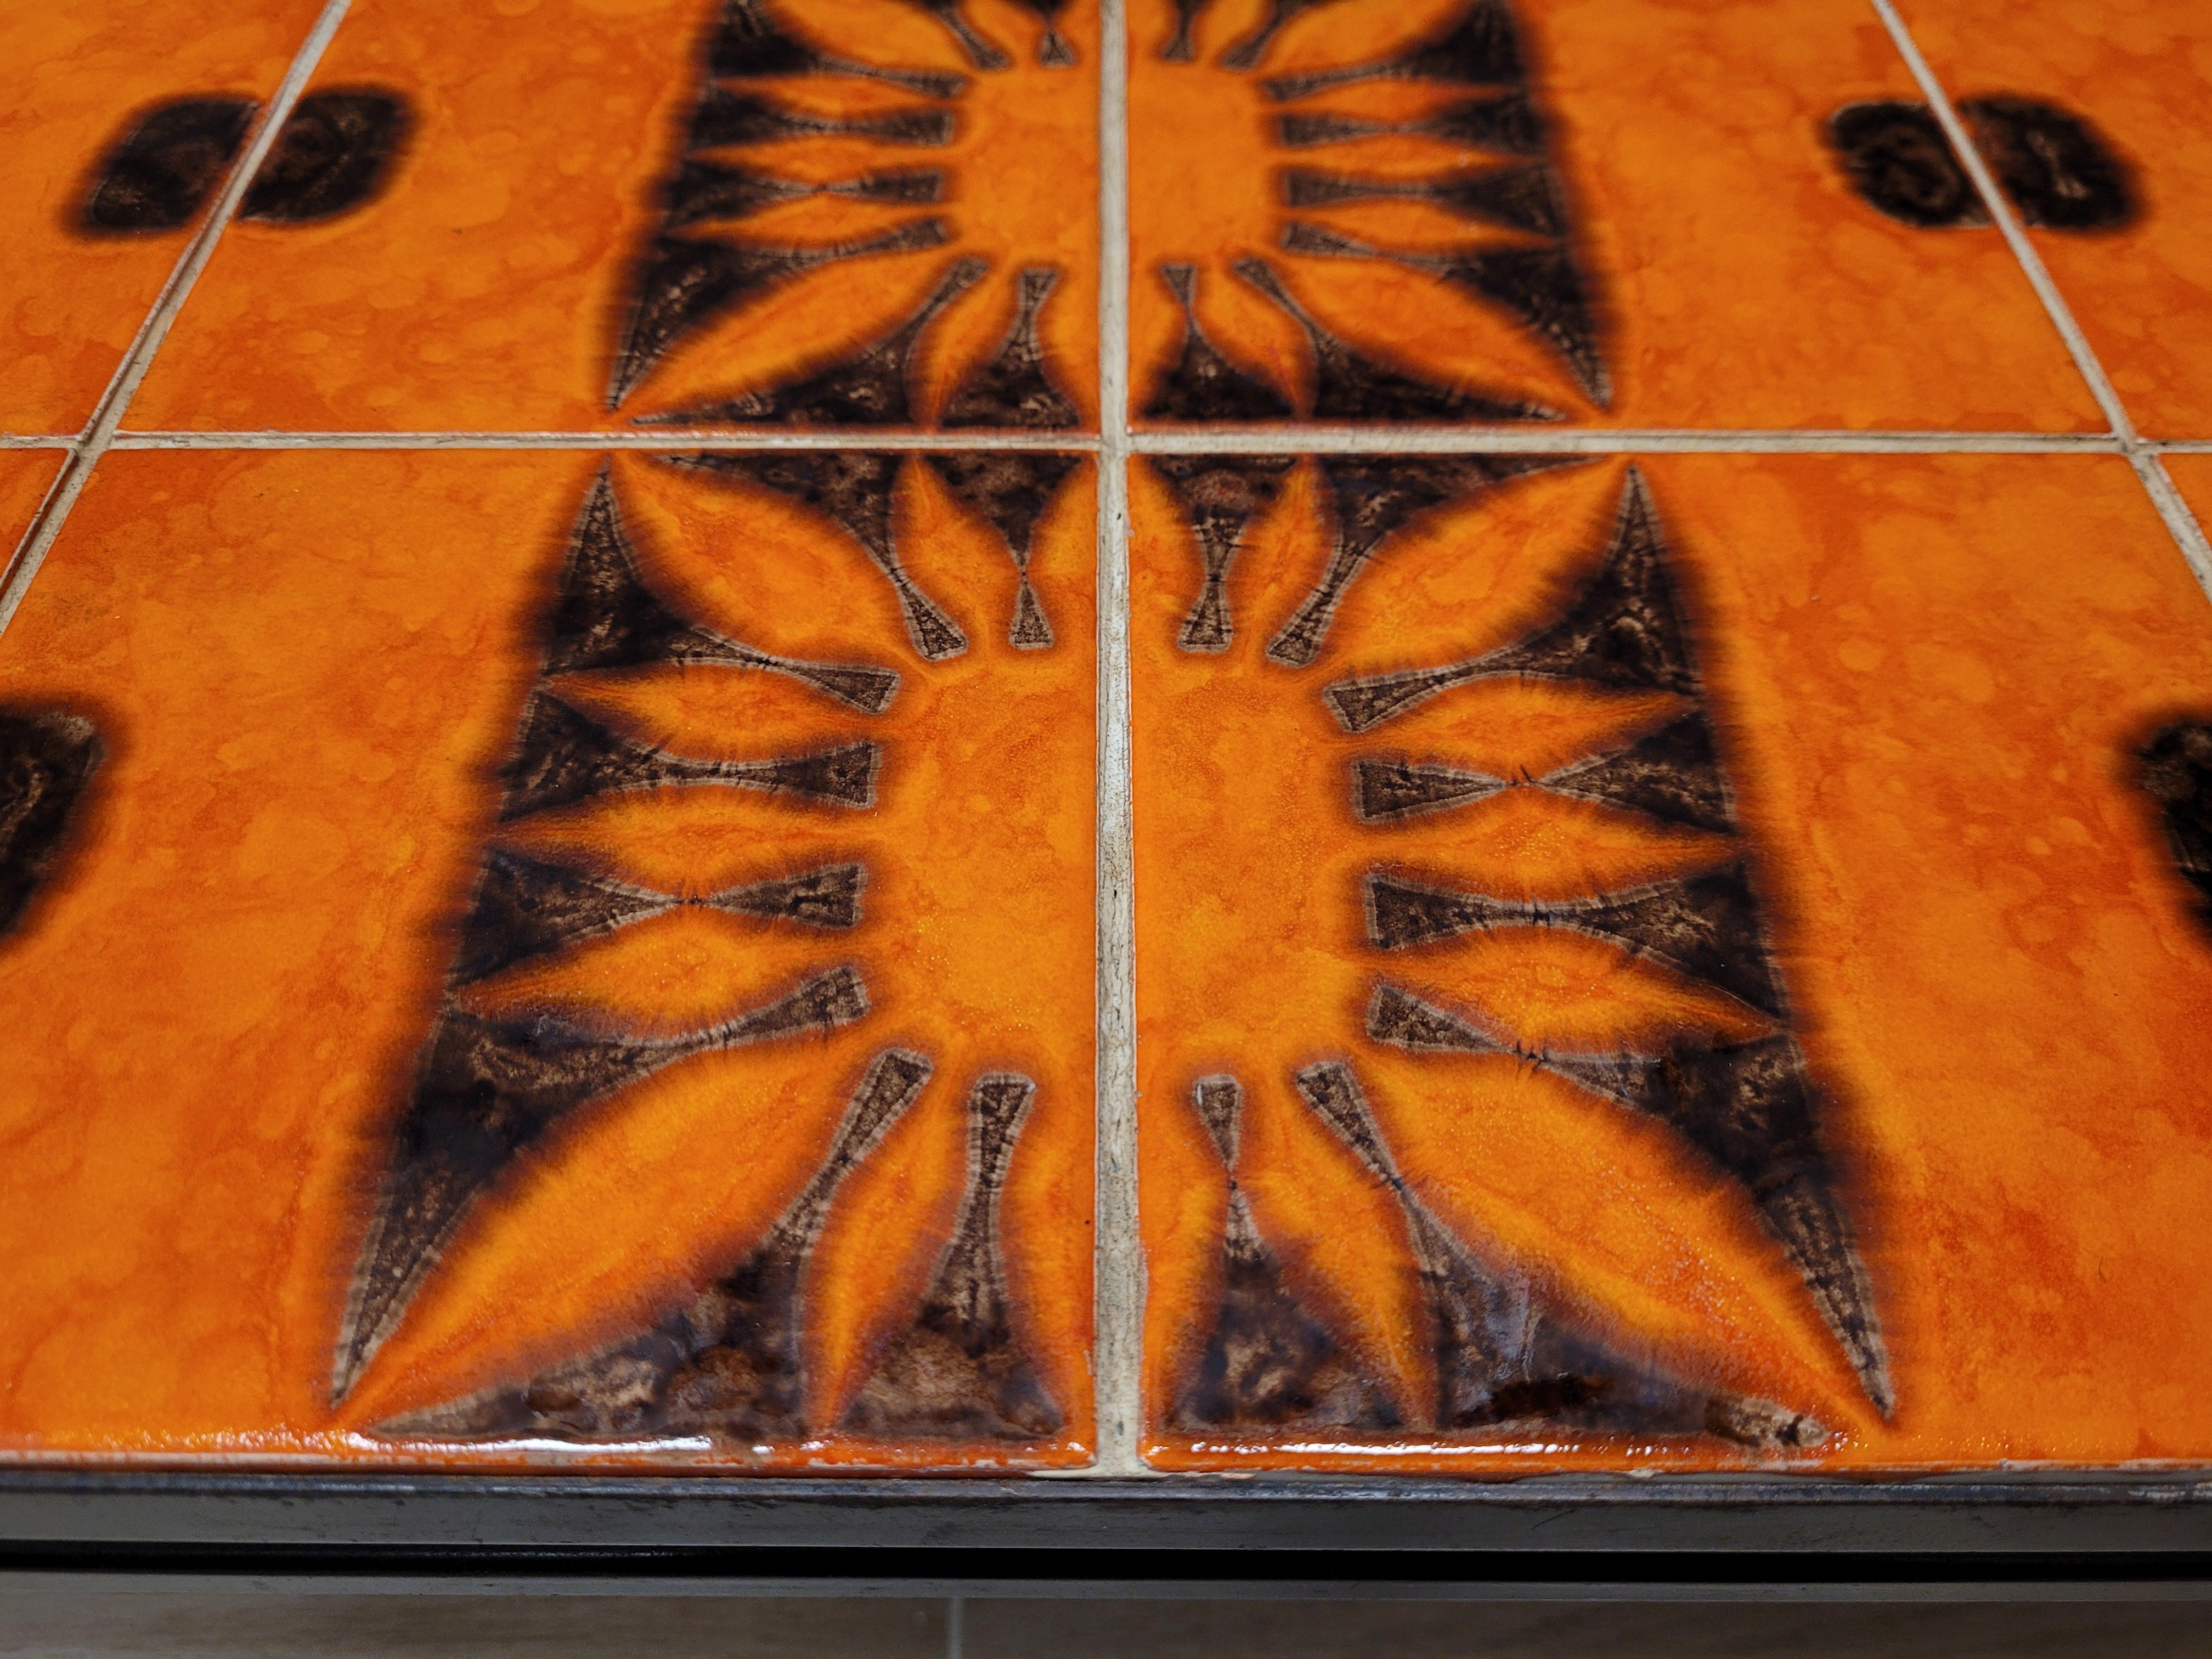 Céramique Capron Vallauris orange et noire - Céramique française - Coffetable  5